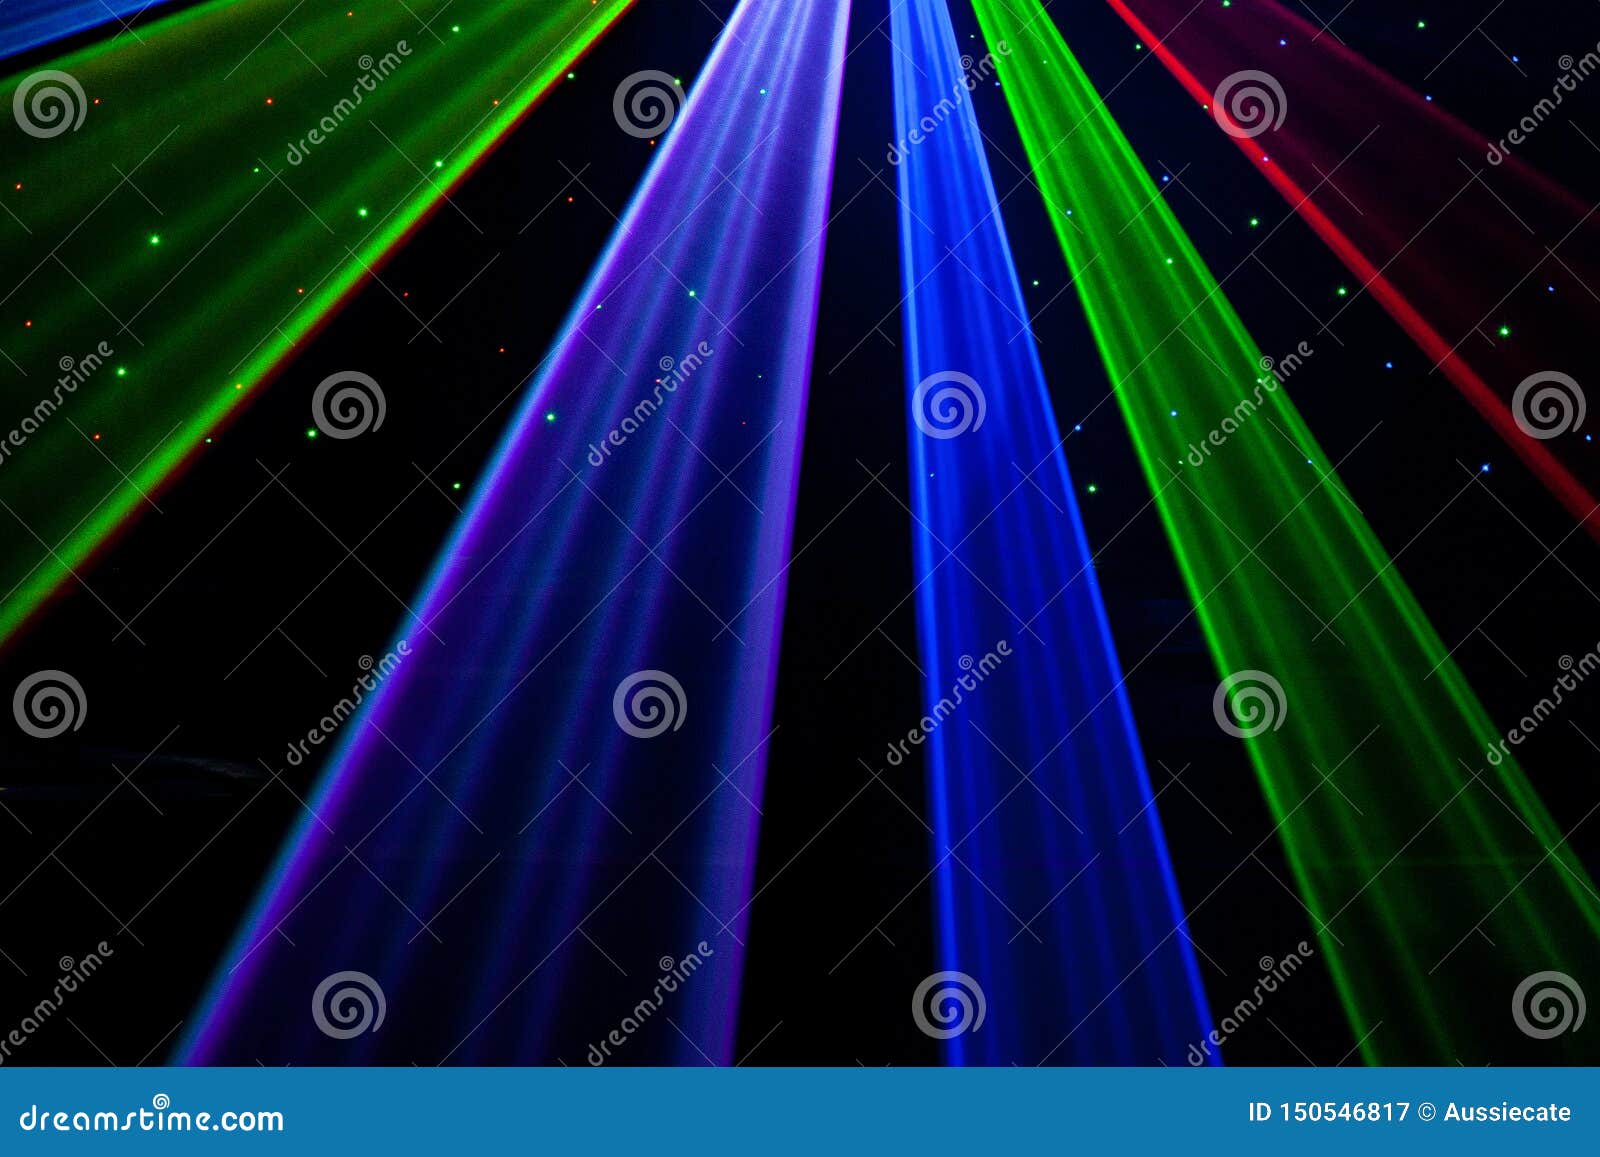 bright nightclub red, green, purple, white, pink, blue laser lights cutting through smoke machine smoke making light patterns